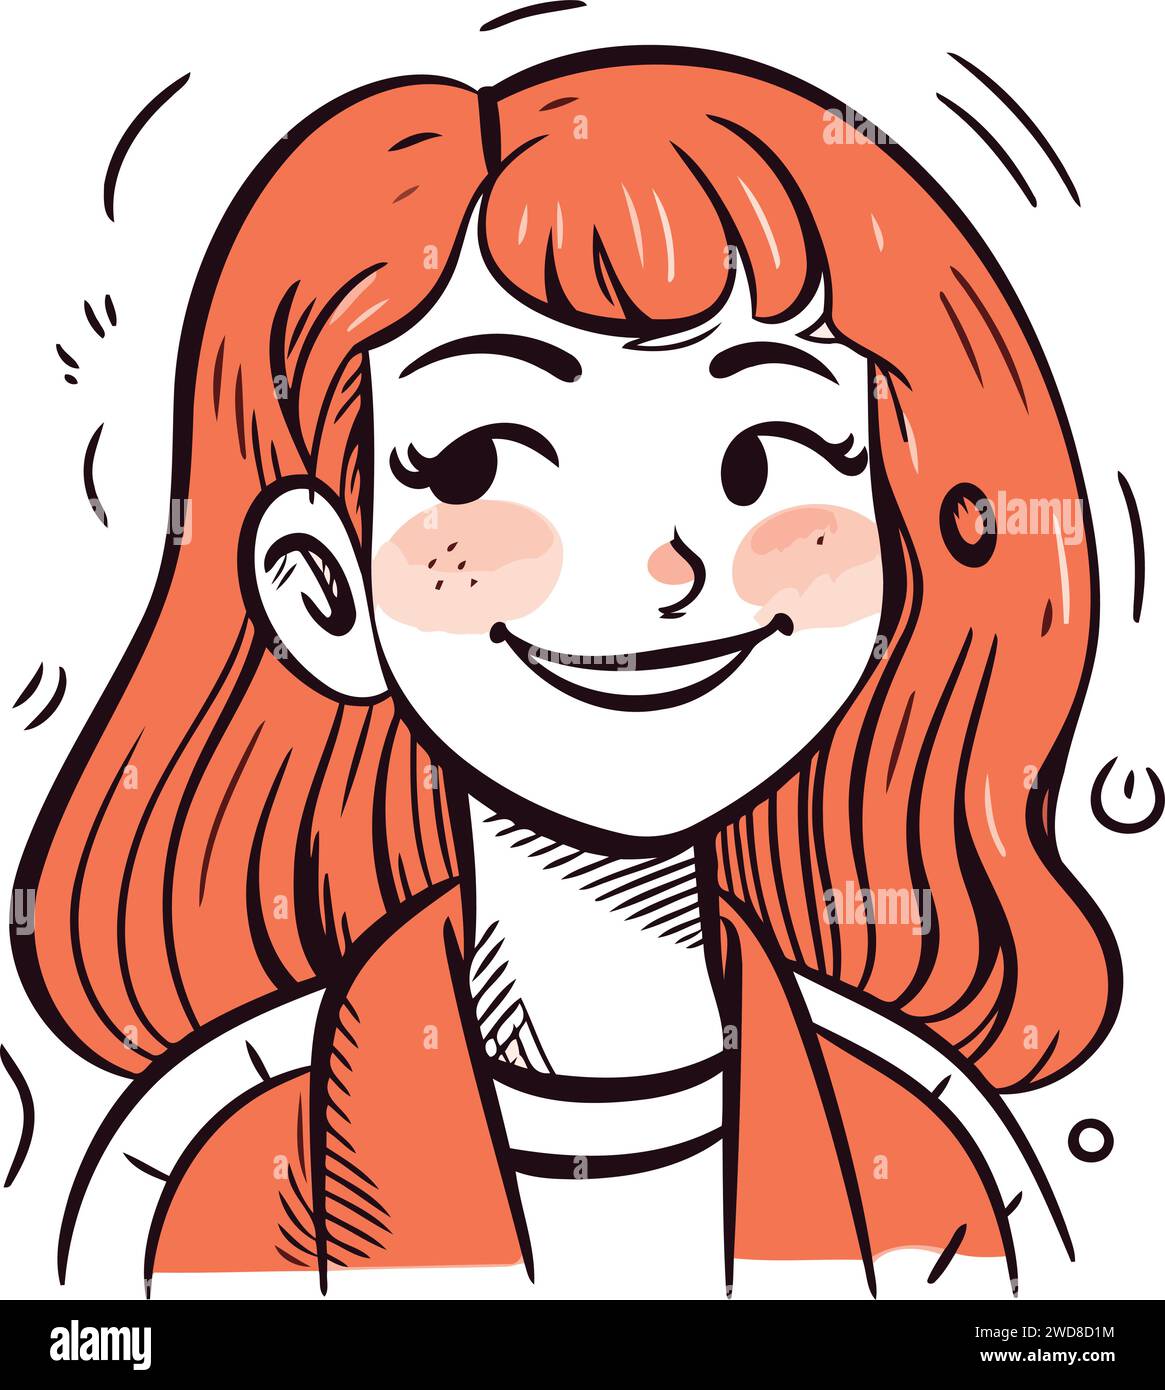 Simpatica ragazza dei cartoni animati con capelli rossi e lentiggini. Illustrazione vettoriale. Illustrazione Vettoriale